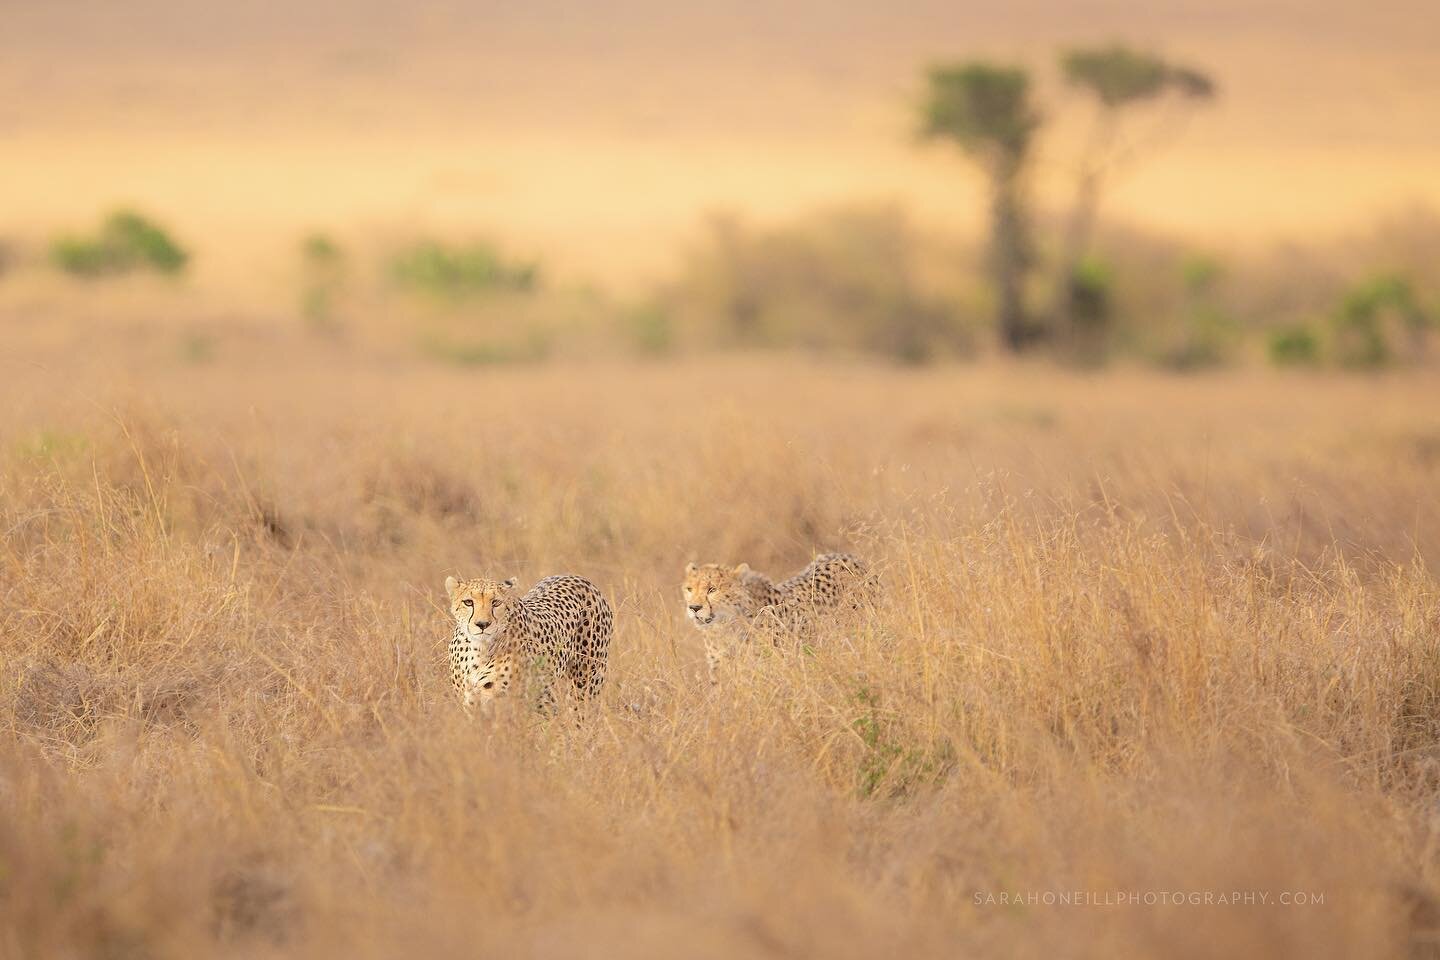 Brothers hunting warthog #cheetah #bigcats #wildlifephotography #naturephotography #cheetahs #masaimara